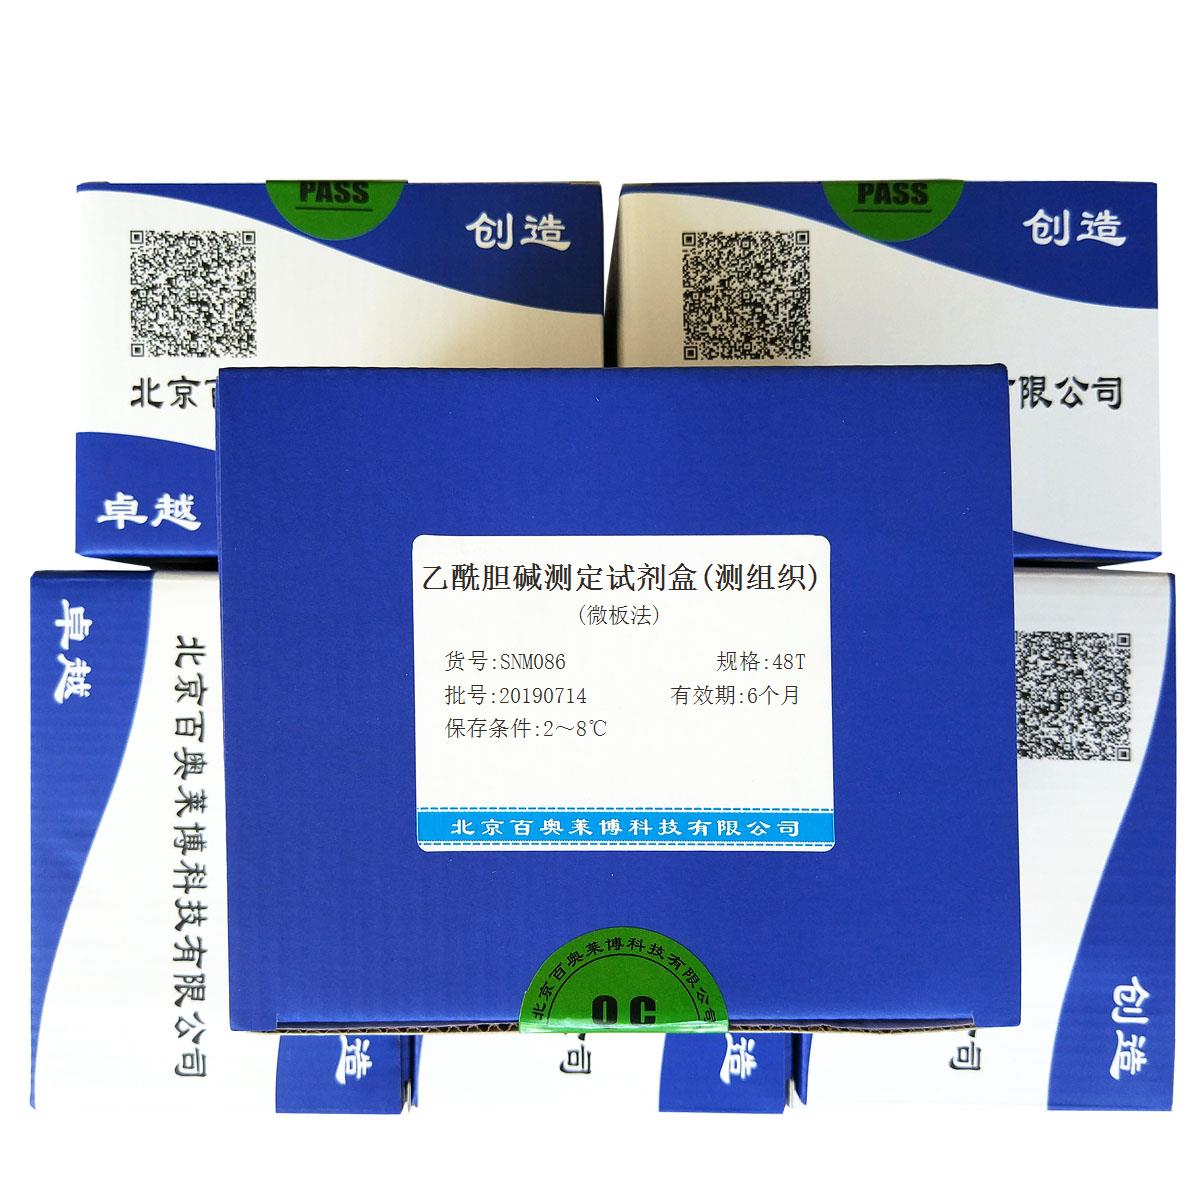 乙酰胆碱测定试剂盒(测组织)(微板法)北京品牌